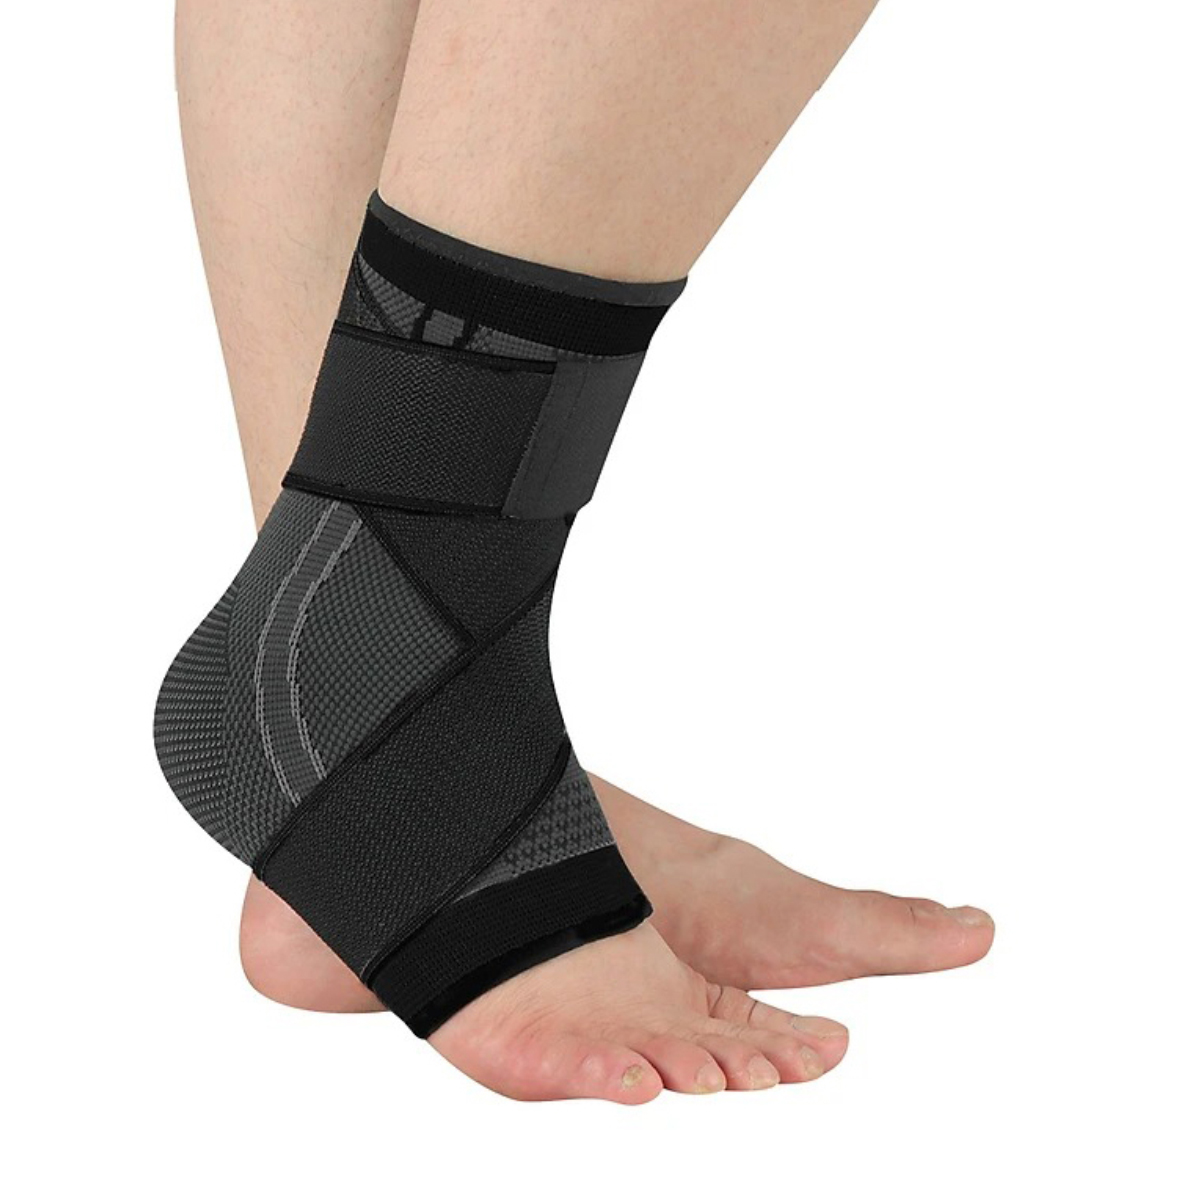 Băng quấn bảo vệ cổ chân , mắt cá chân , lòng bàn chân , giúp tránh chấn thương , tăng khả năng vận động HJ020 - Hàng chính hãng